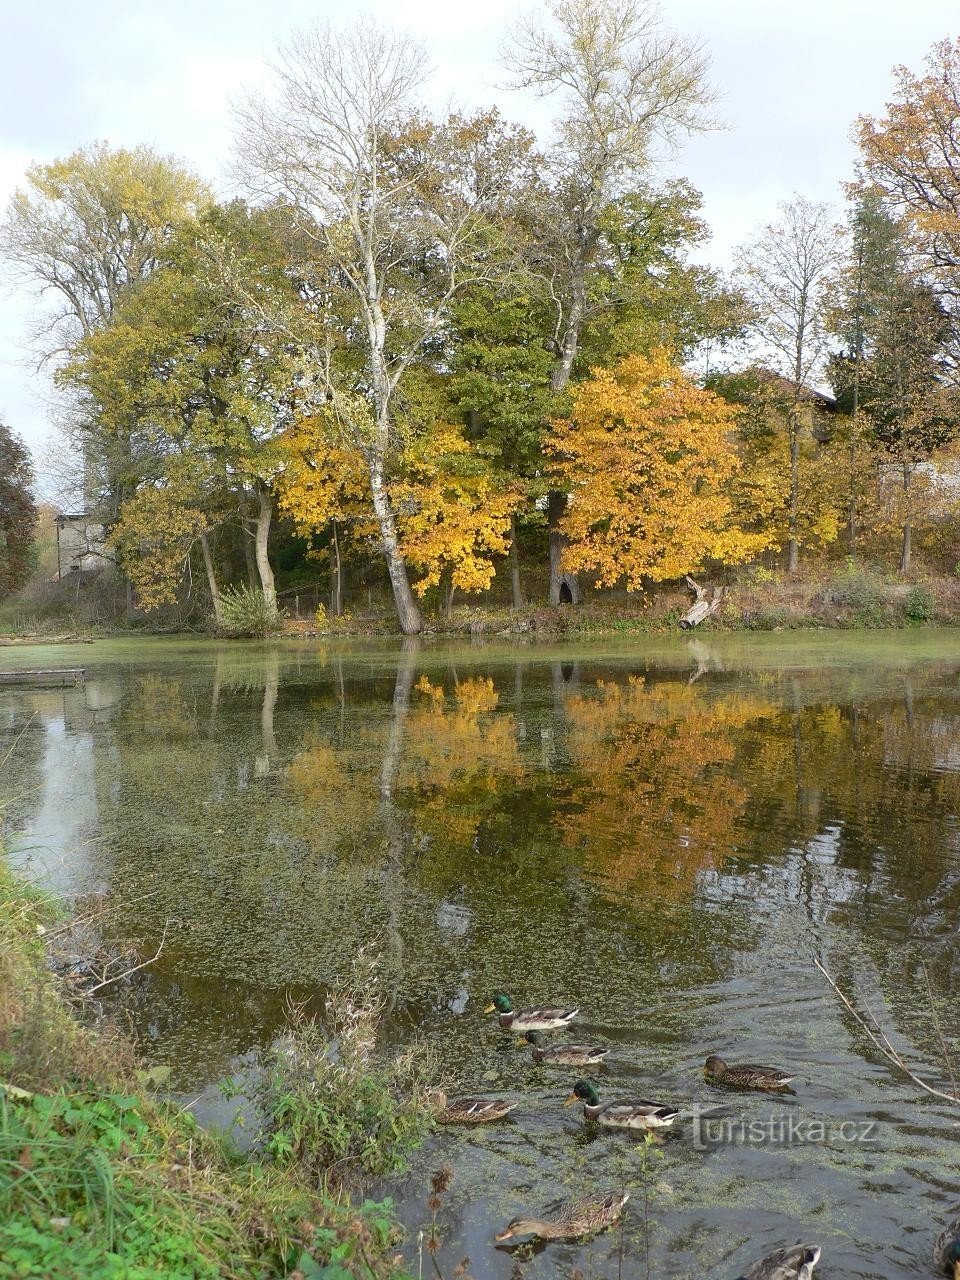 Lažany, vista do parque e da lagoa